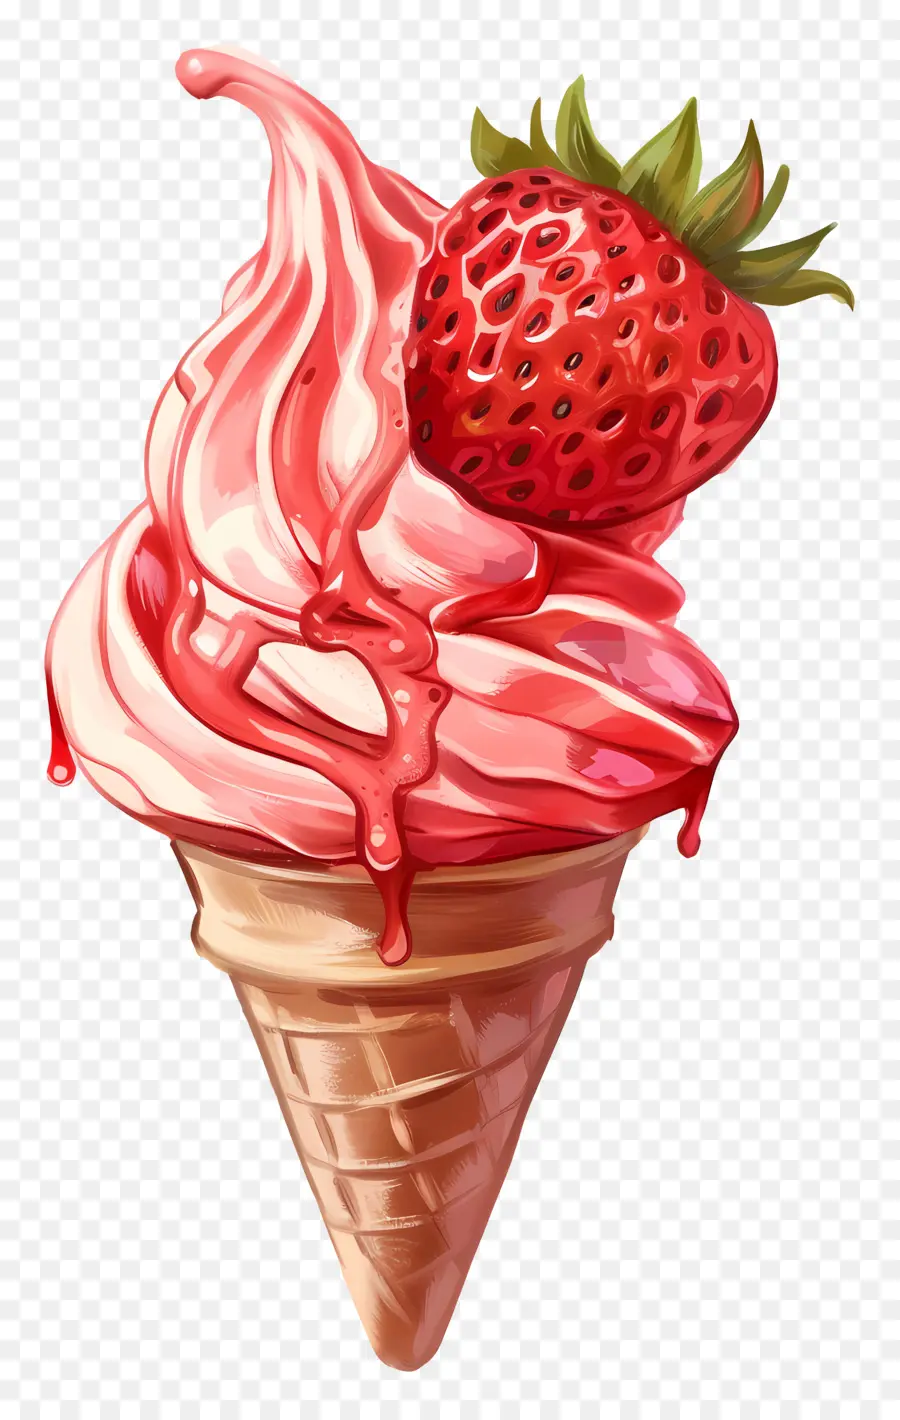 gelato alla fragola fragola fragola gelatura cono cono rosa sciroppo di gelato rosa - Cono gelato alla fragola con gocciolamenti di sciroppo